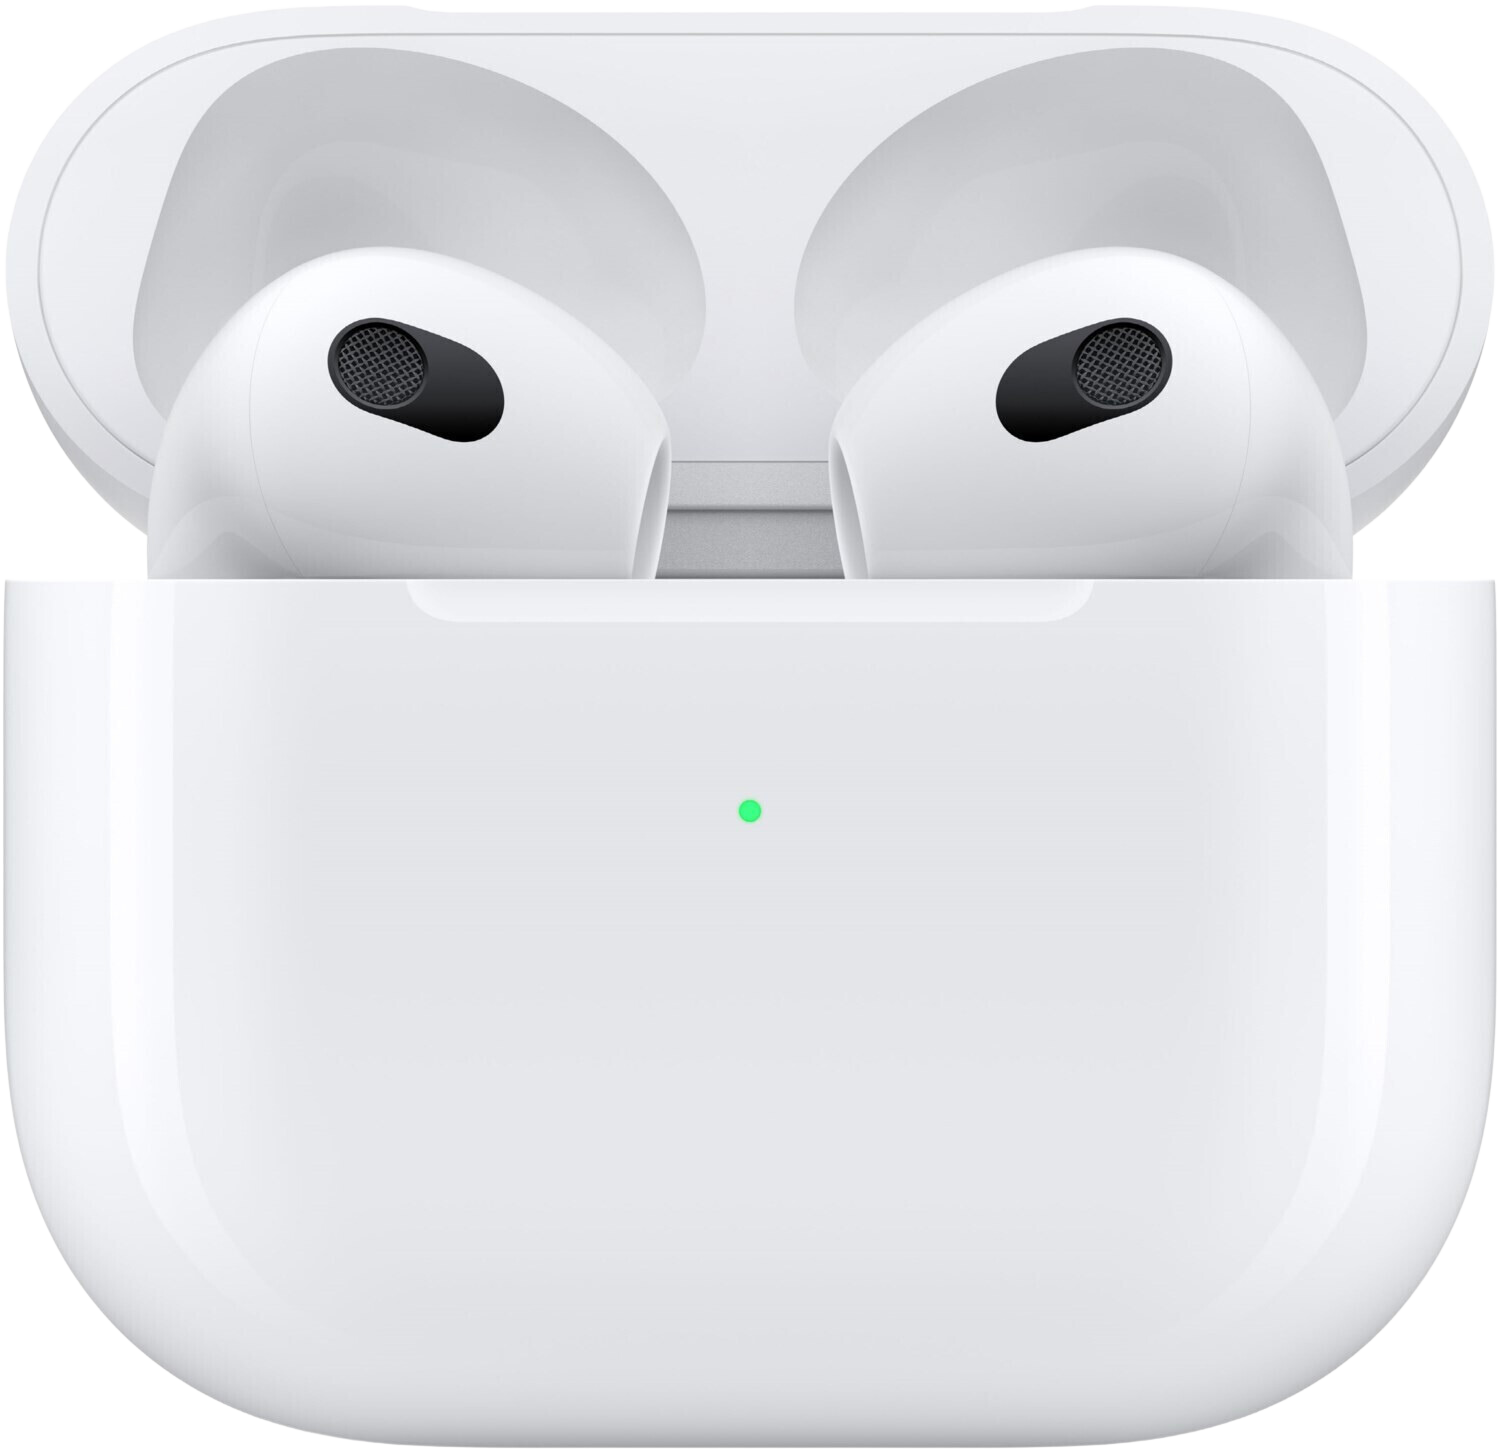 Apple AirPods 3 mit MagSafe-Case - True Wireless, Spatial Audio, Bluetooth 5.0, IPX4, 30h Laufzeit